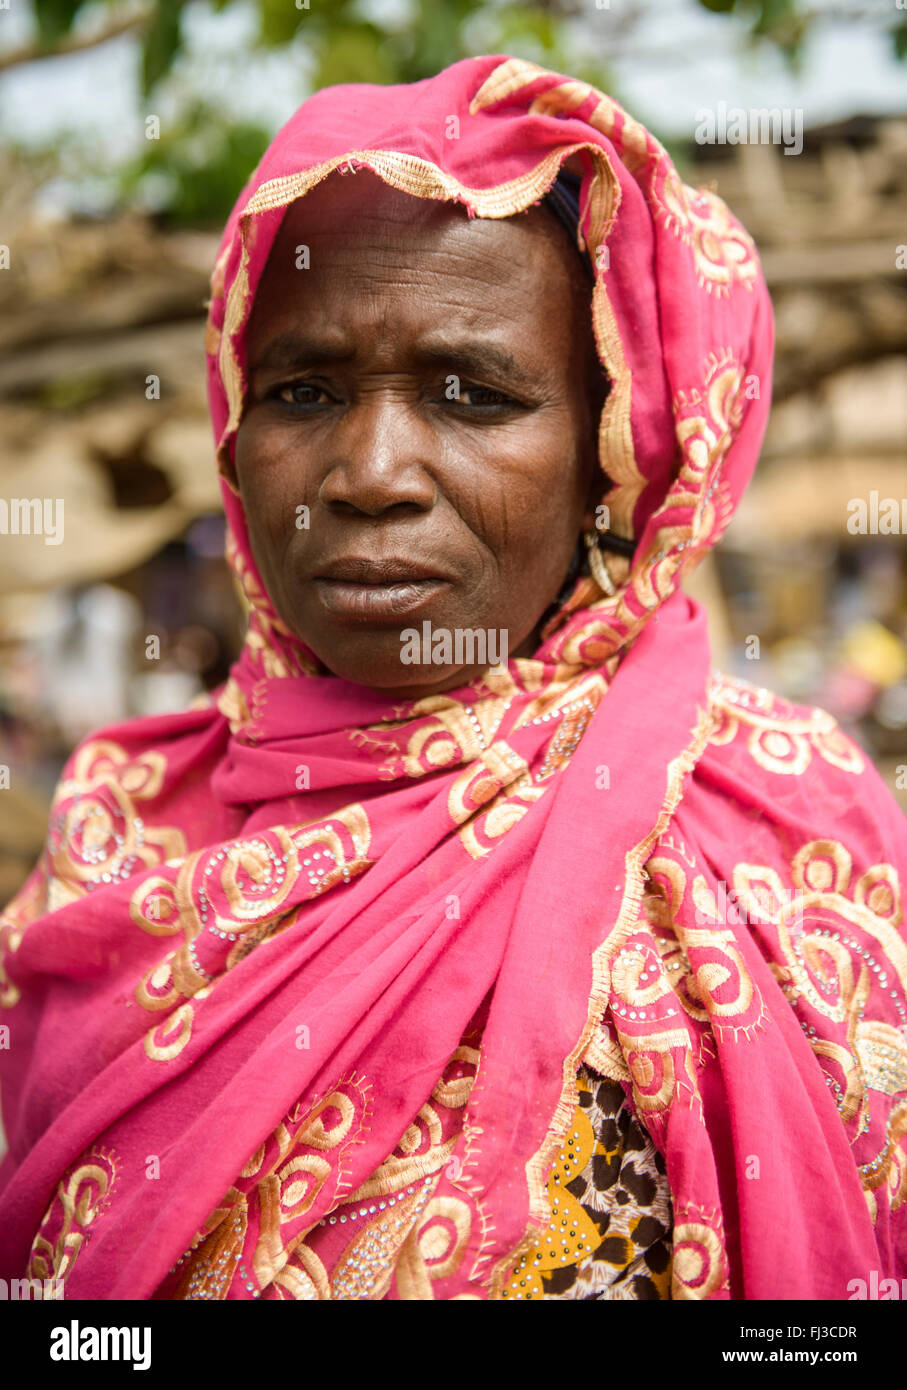 Tribu de femme peul du nord du Bénin, Afrique Banque D'Images